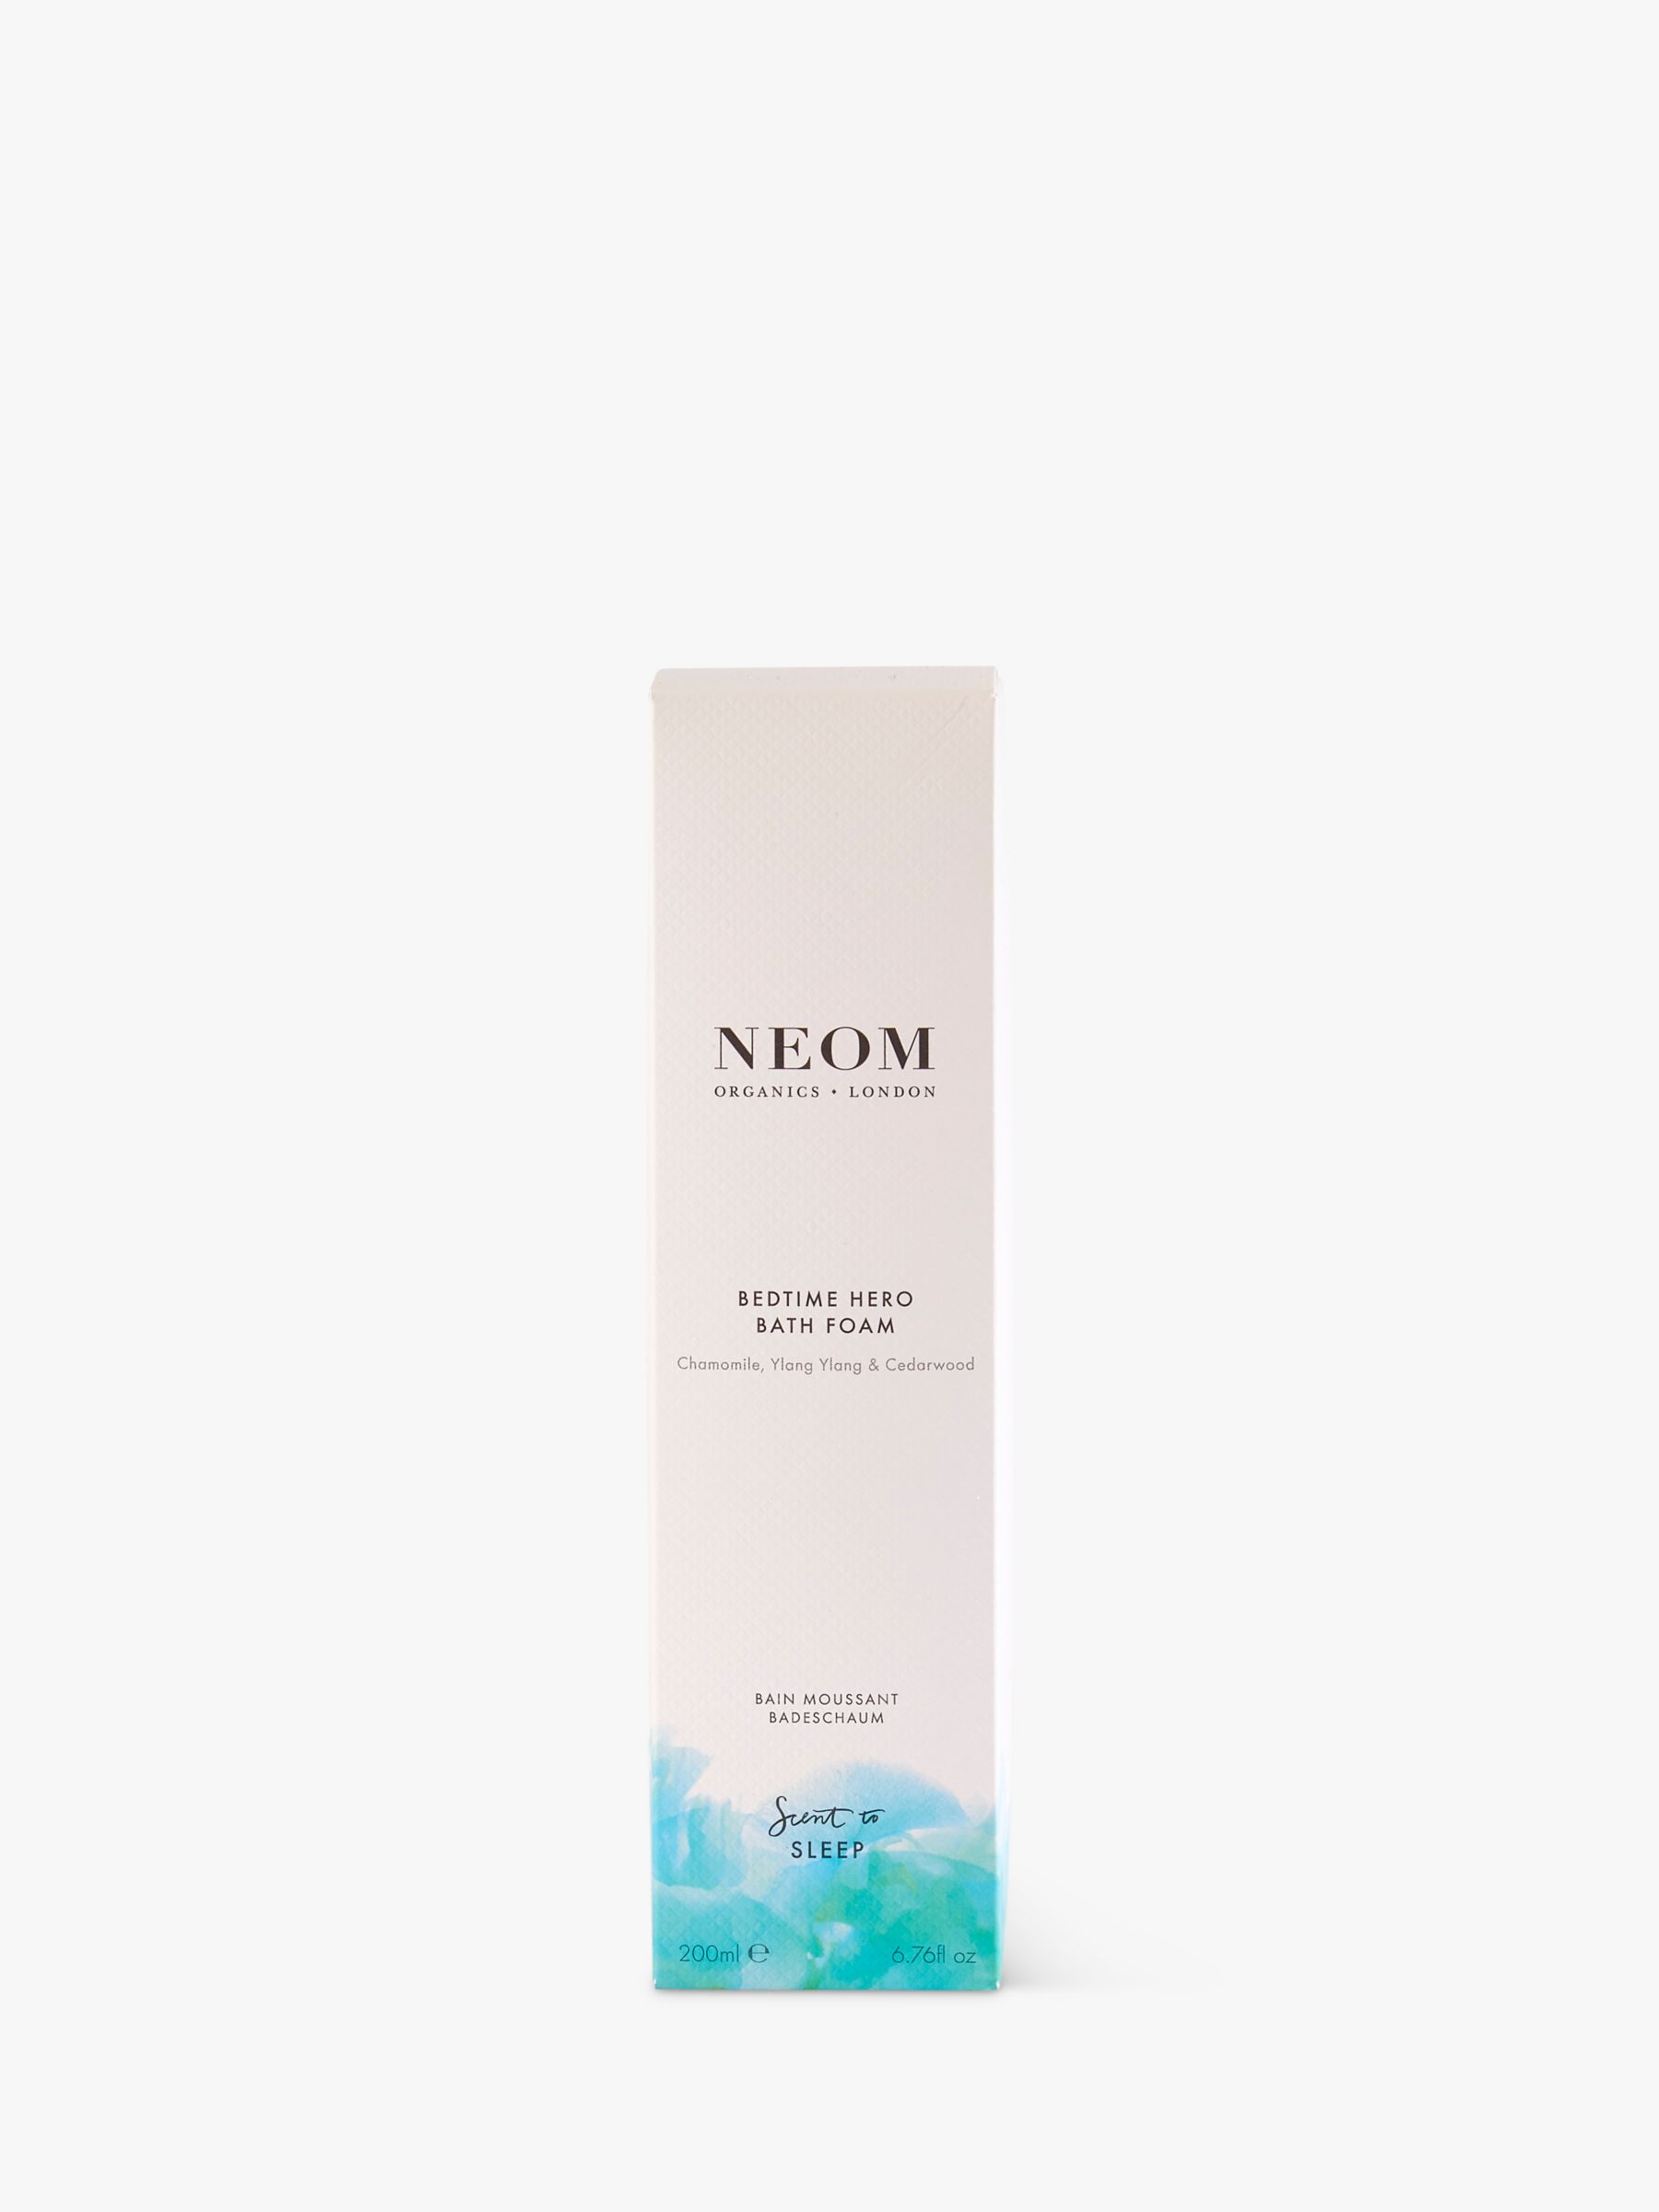 Neom Organics London Bedtime Hero Bath Foam, 200ml